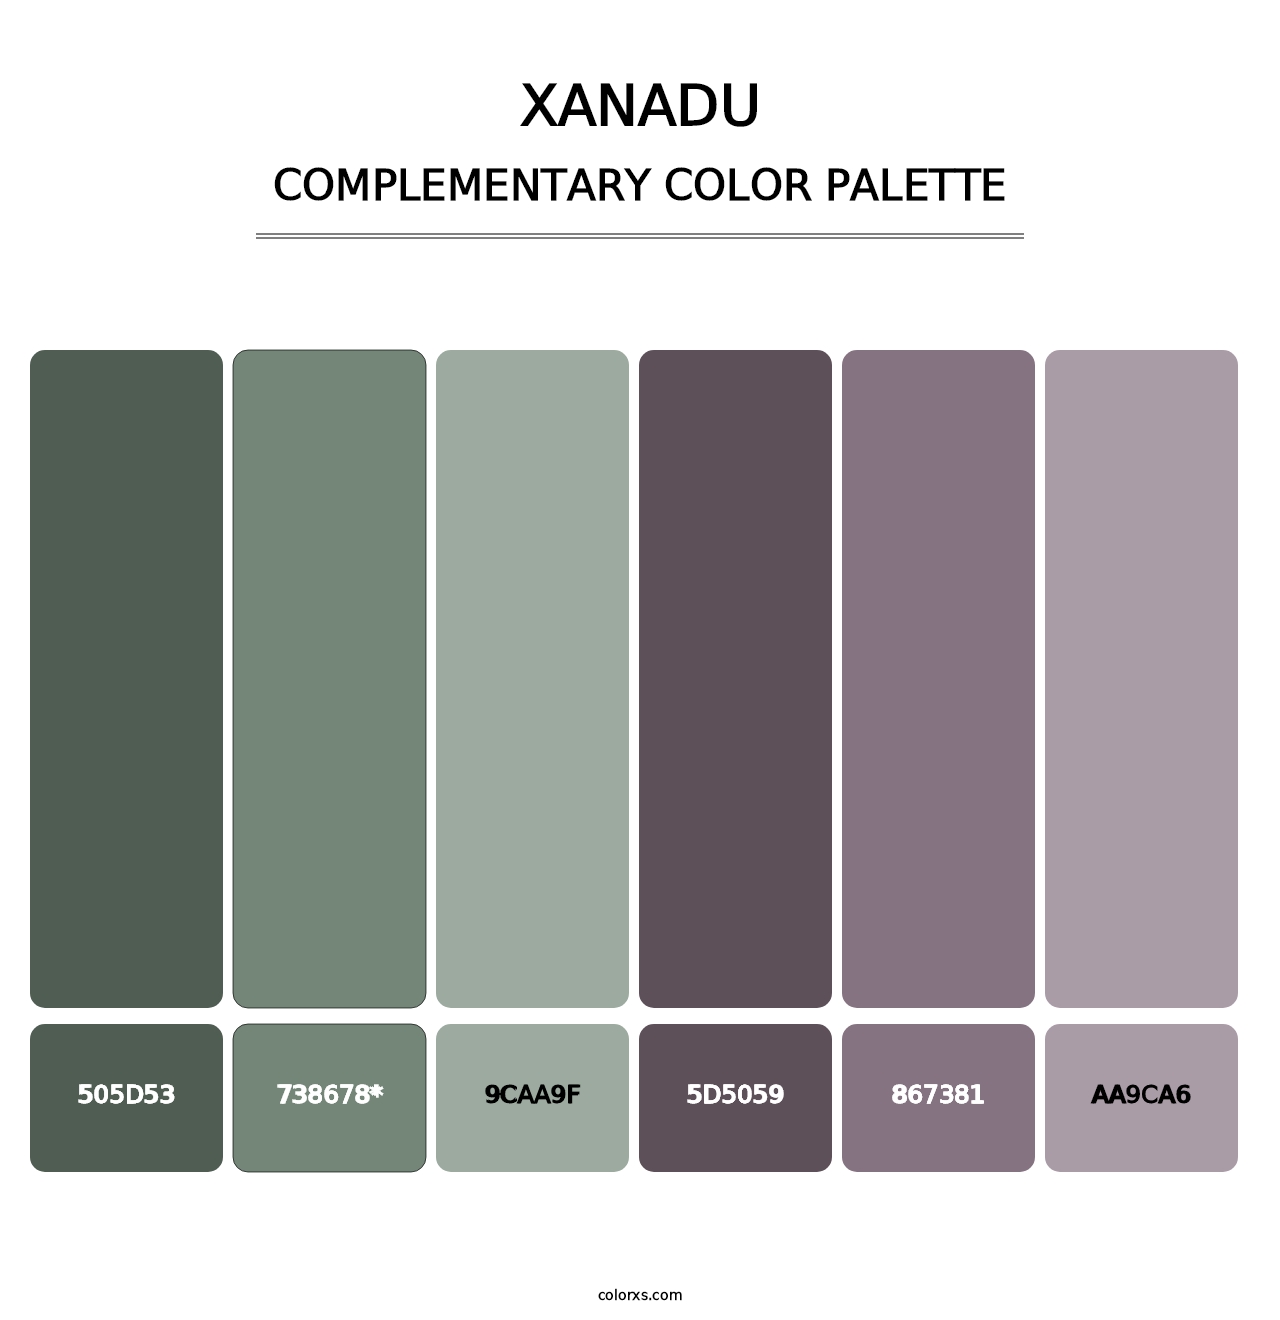 Xanadu - Complementary Color Palette